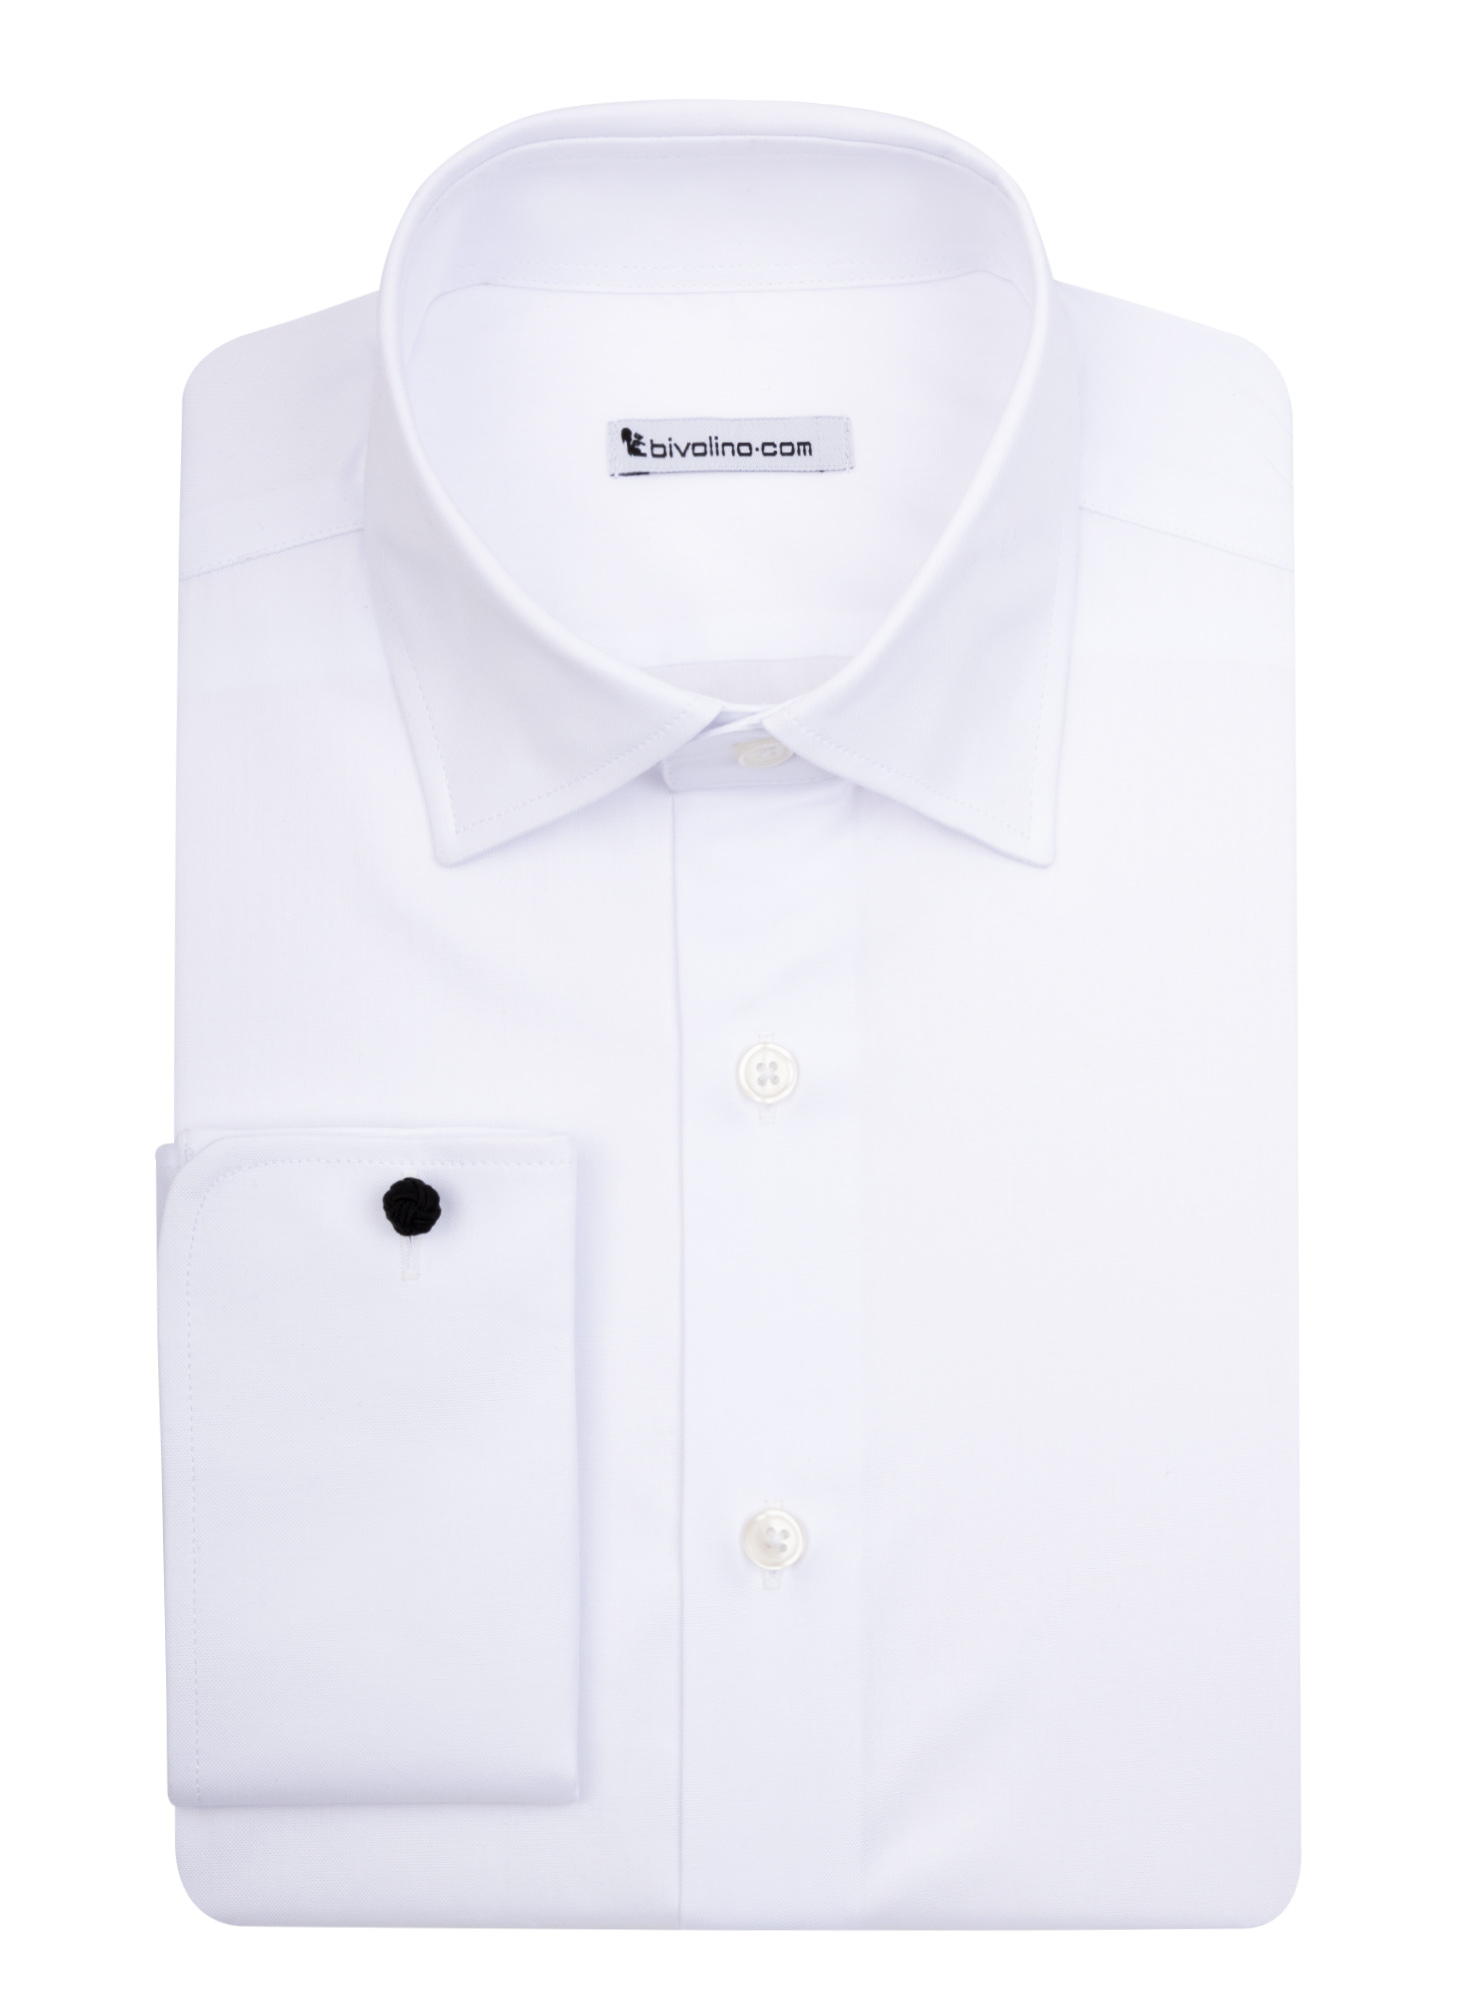 UDINE - PinPoint Blanco camisa - KIWI 1